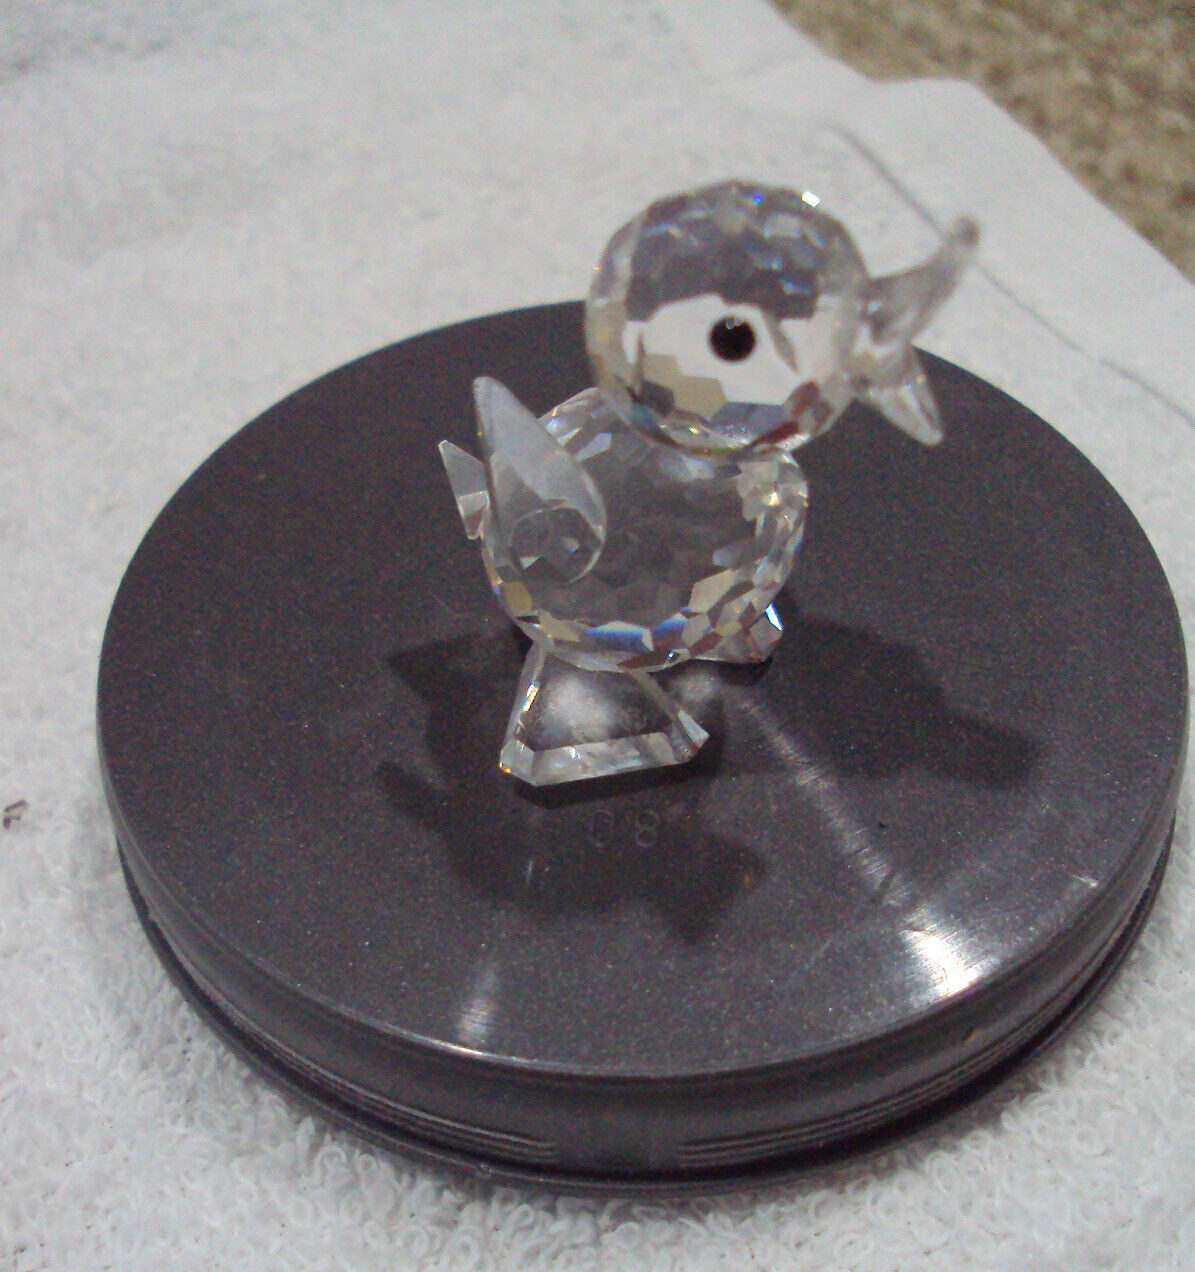 Swarovski Crystal Figurine Mini Quacking Drake Duck w/ Box 7660 NR 040 000